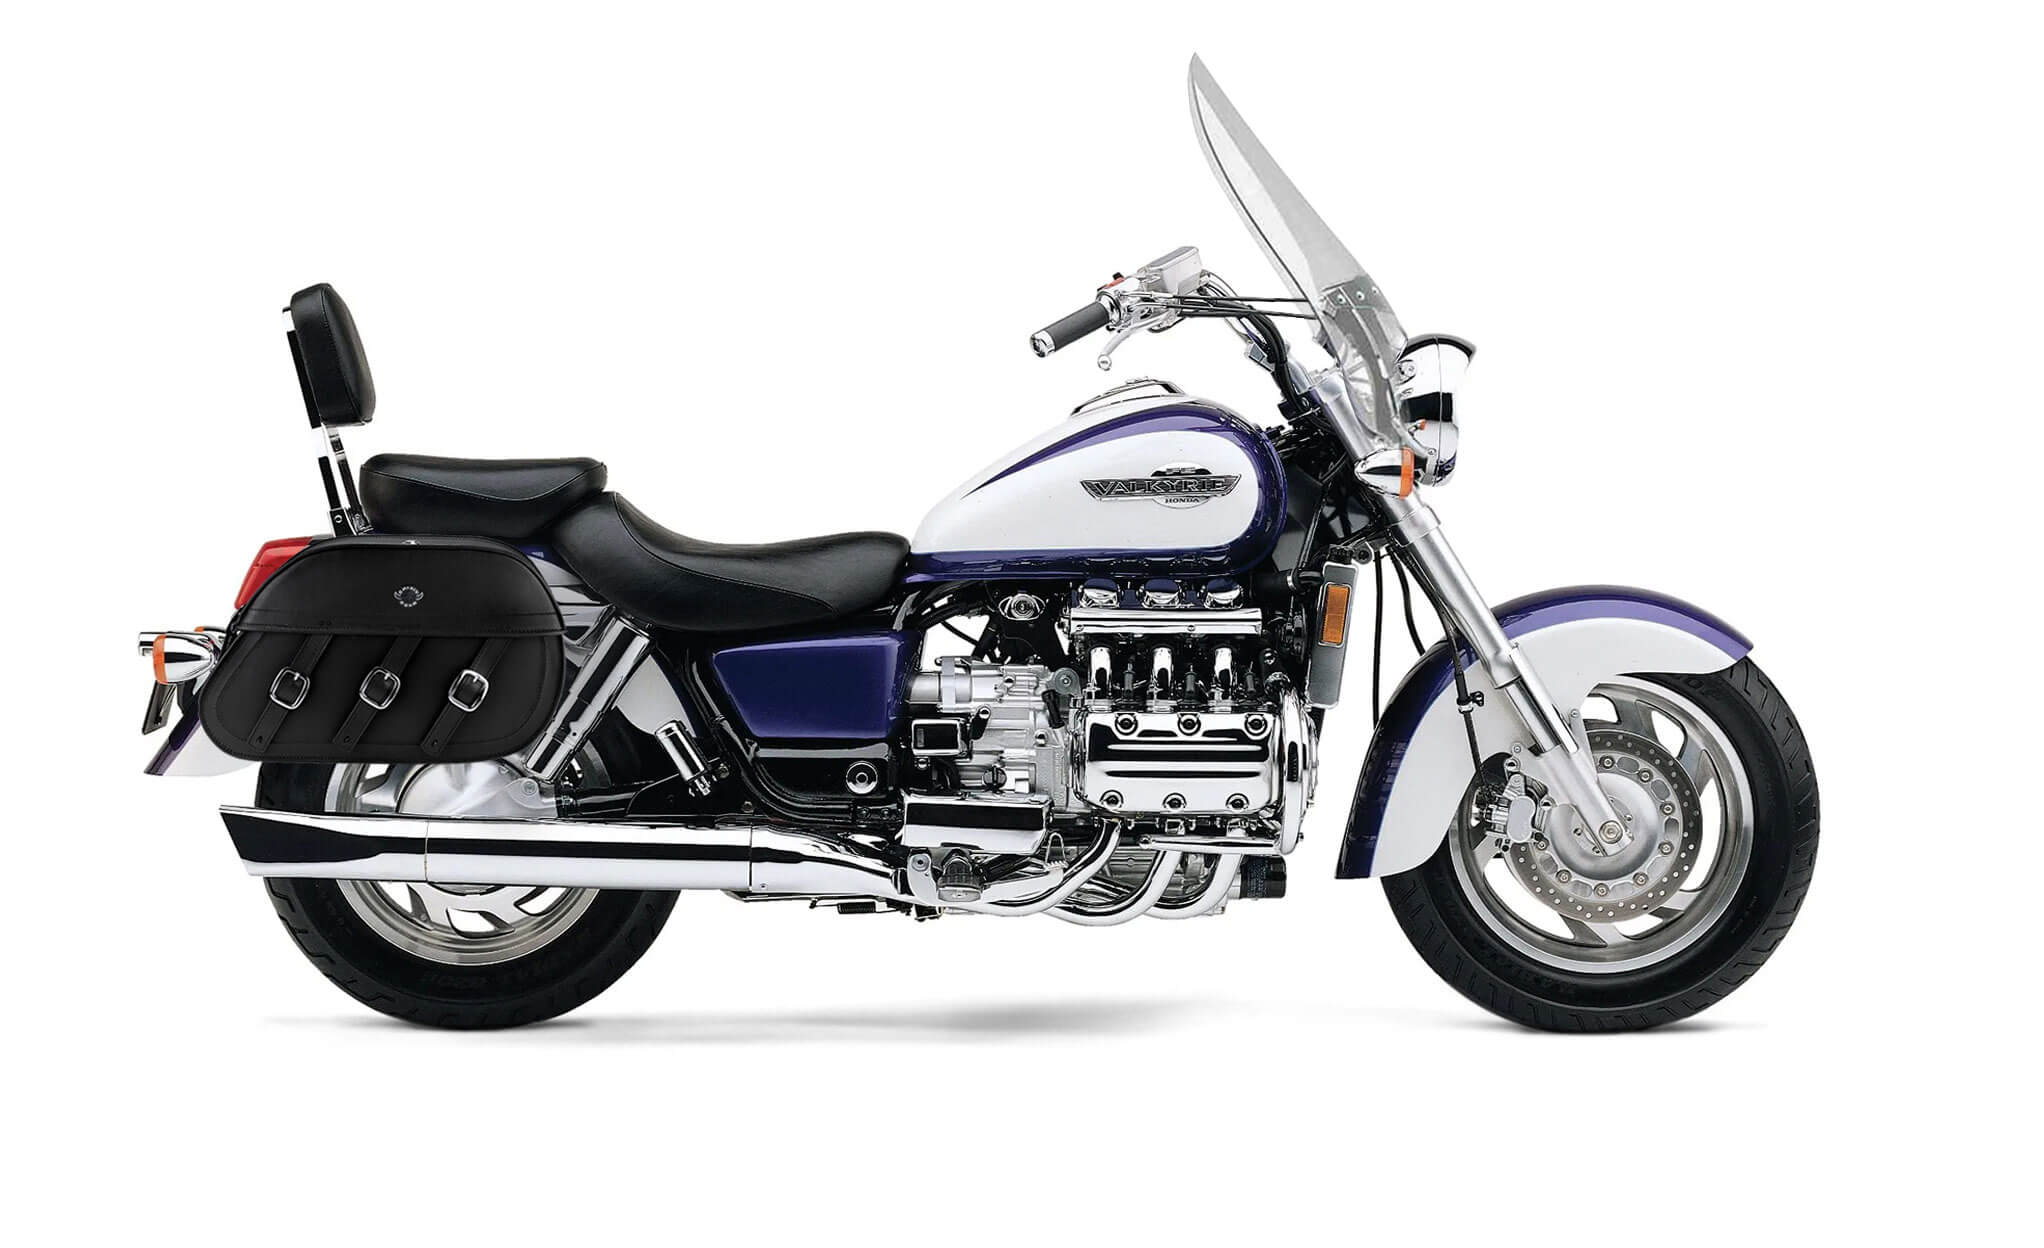 Viking Trianon Extra Large Honda Valkyrie 1500 Tourer Leather Motorcycle Saddlebags on Bike Photo @expand